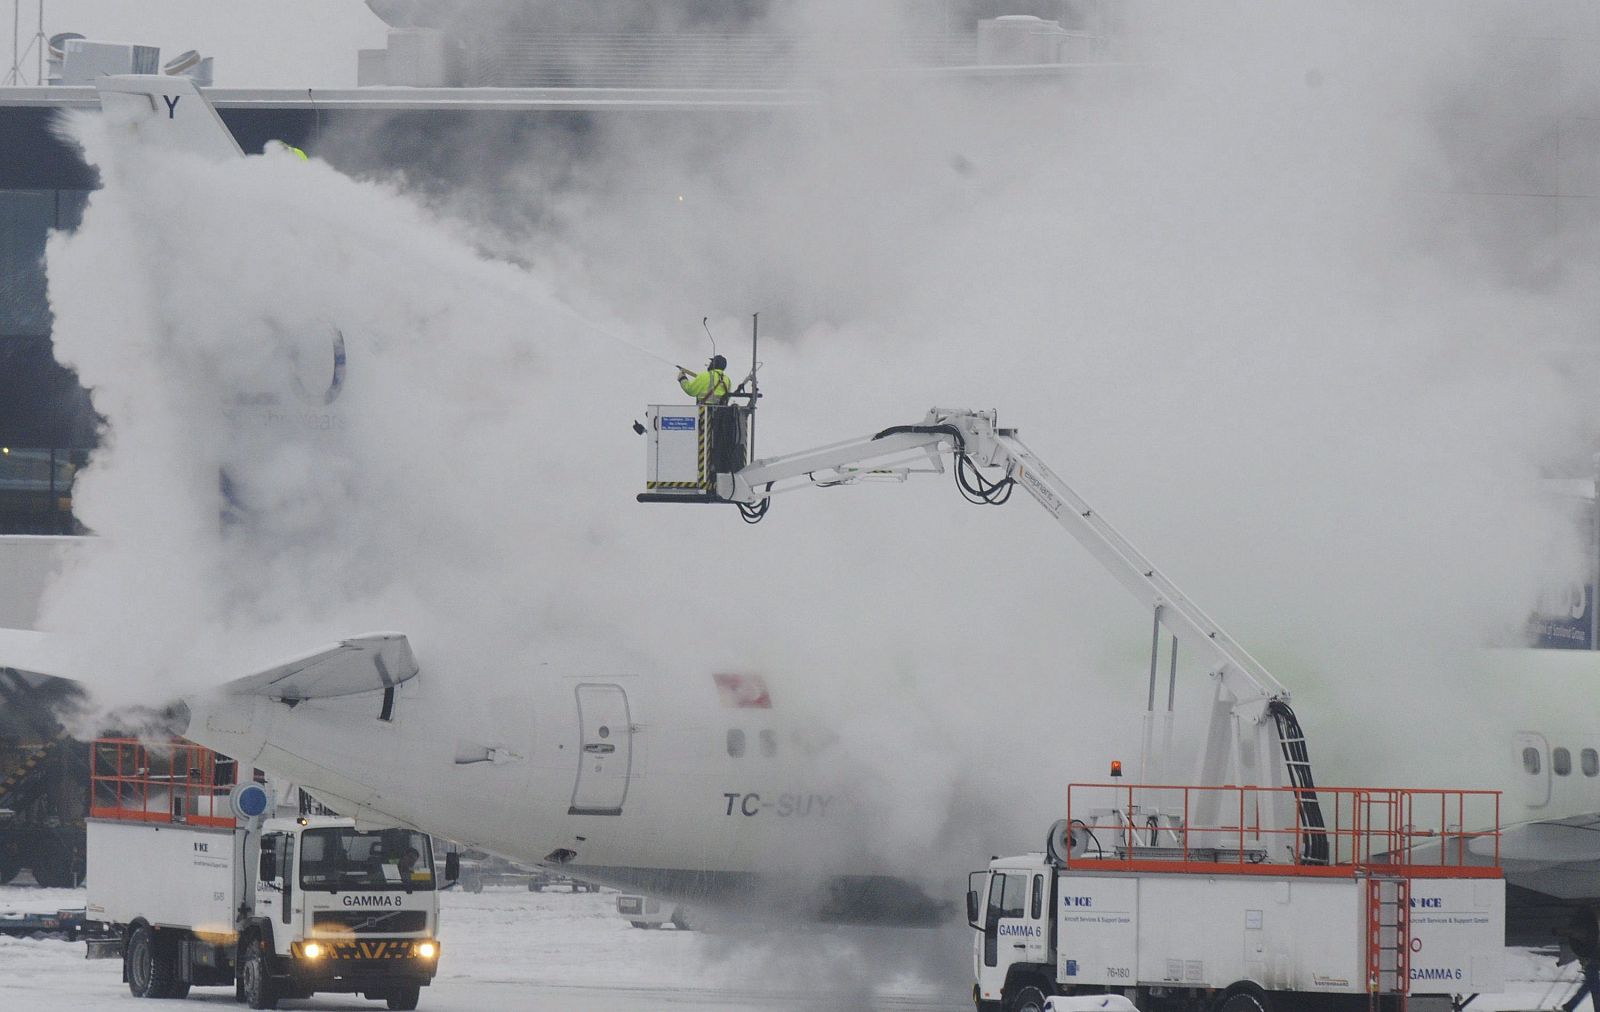 El servicio de mantenimiento descongela un avión en Francfort